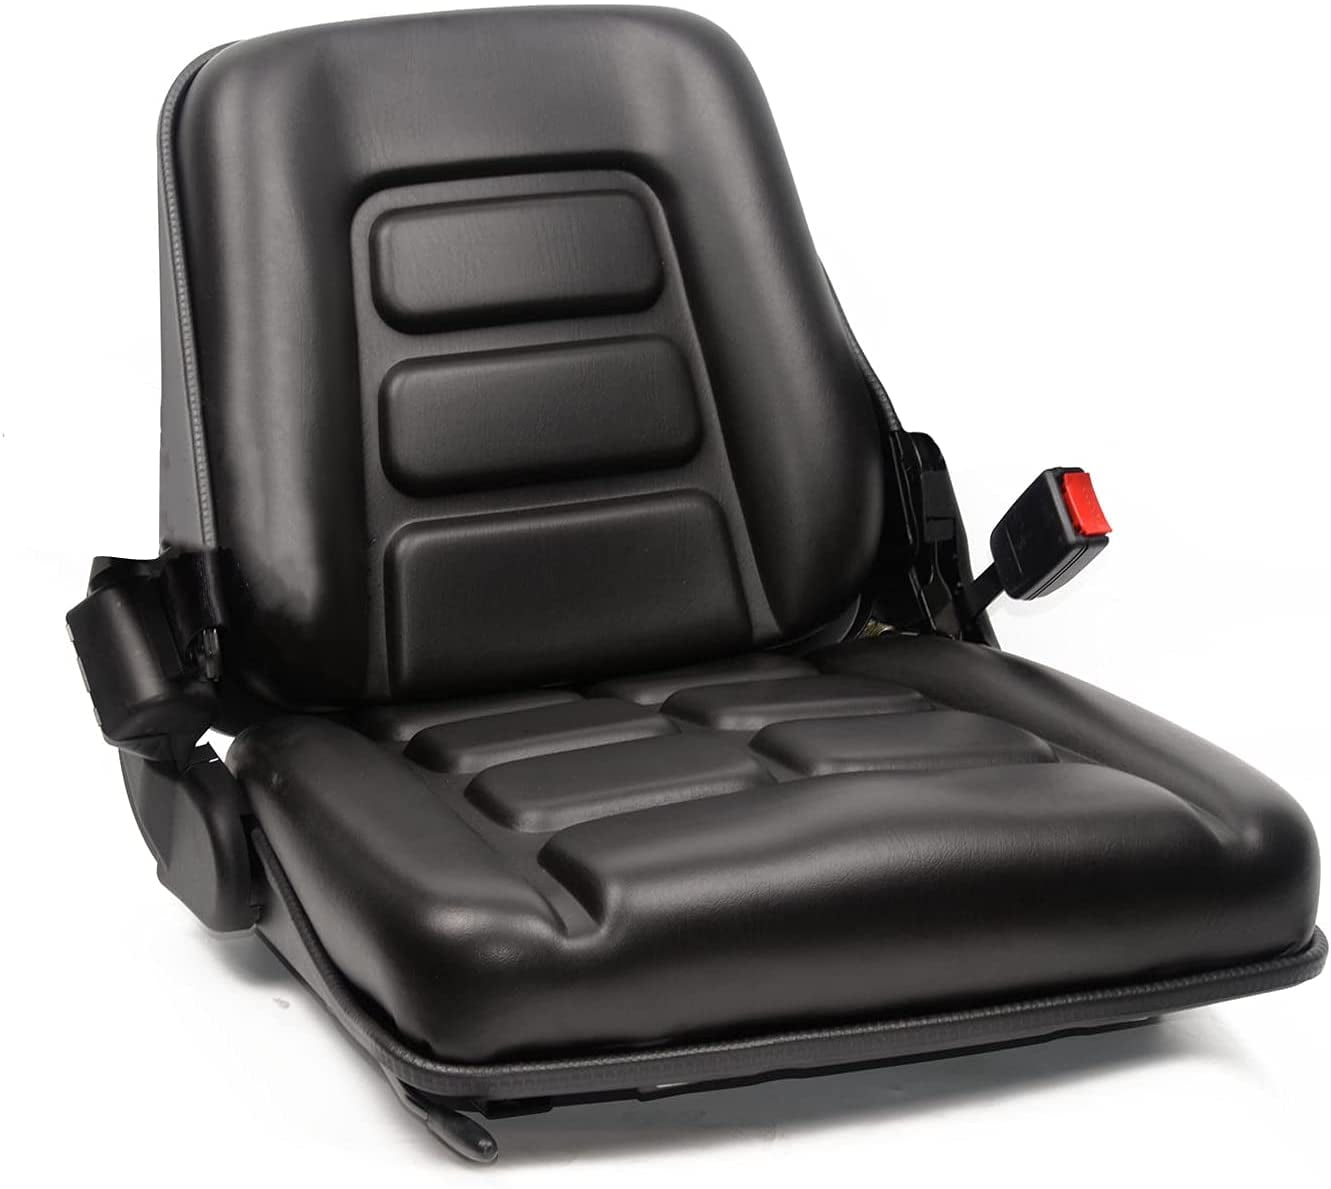 TICSEA Universal Forklift Seat,Tractor Seat with Adjustable Backrest Headrest Armrests for Excavator Harvester Loader Backhoe Dozer Telehandler 